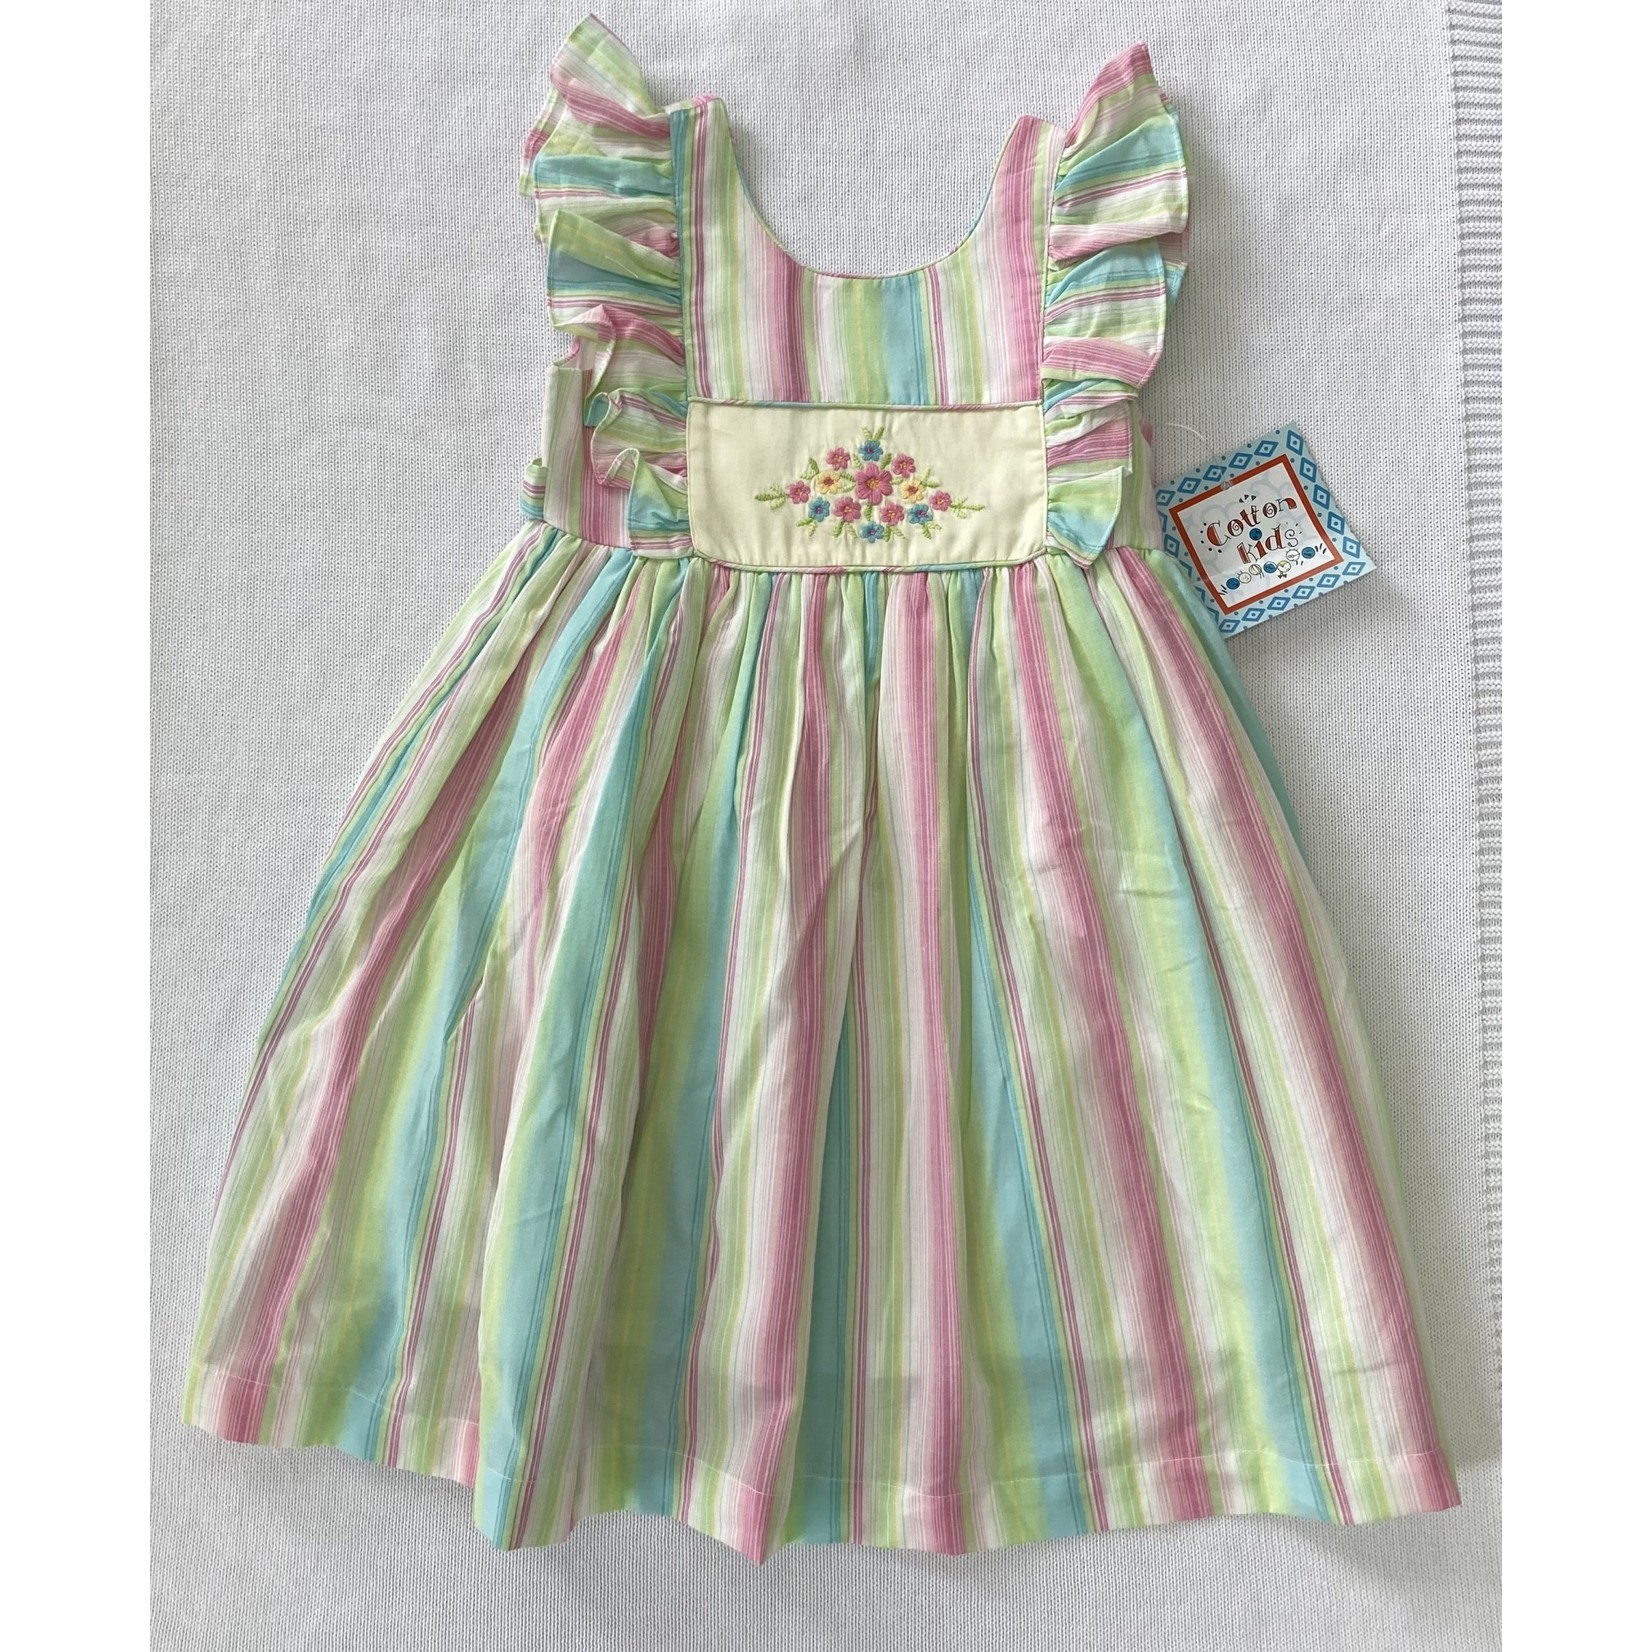 Pastel Stripe Dress w/Flower Applique